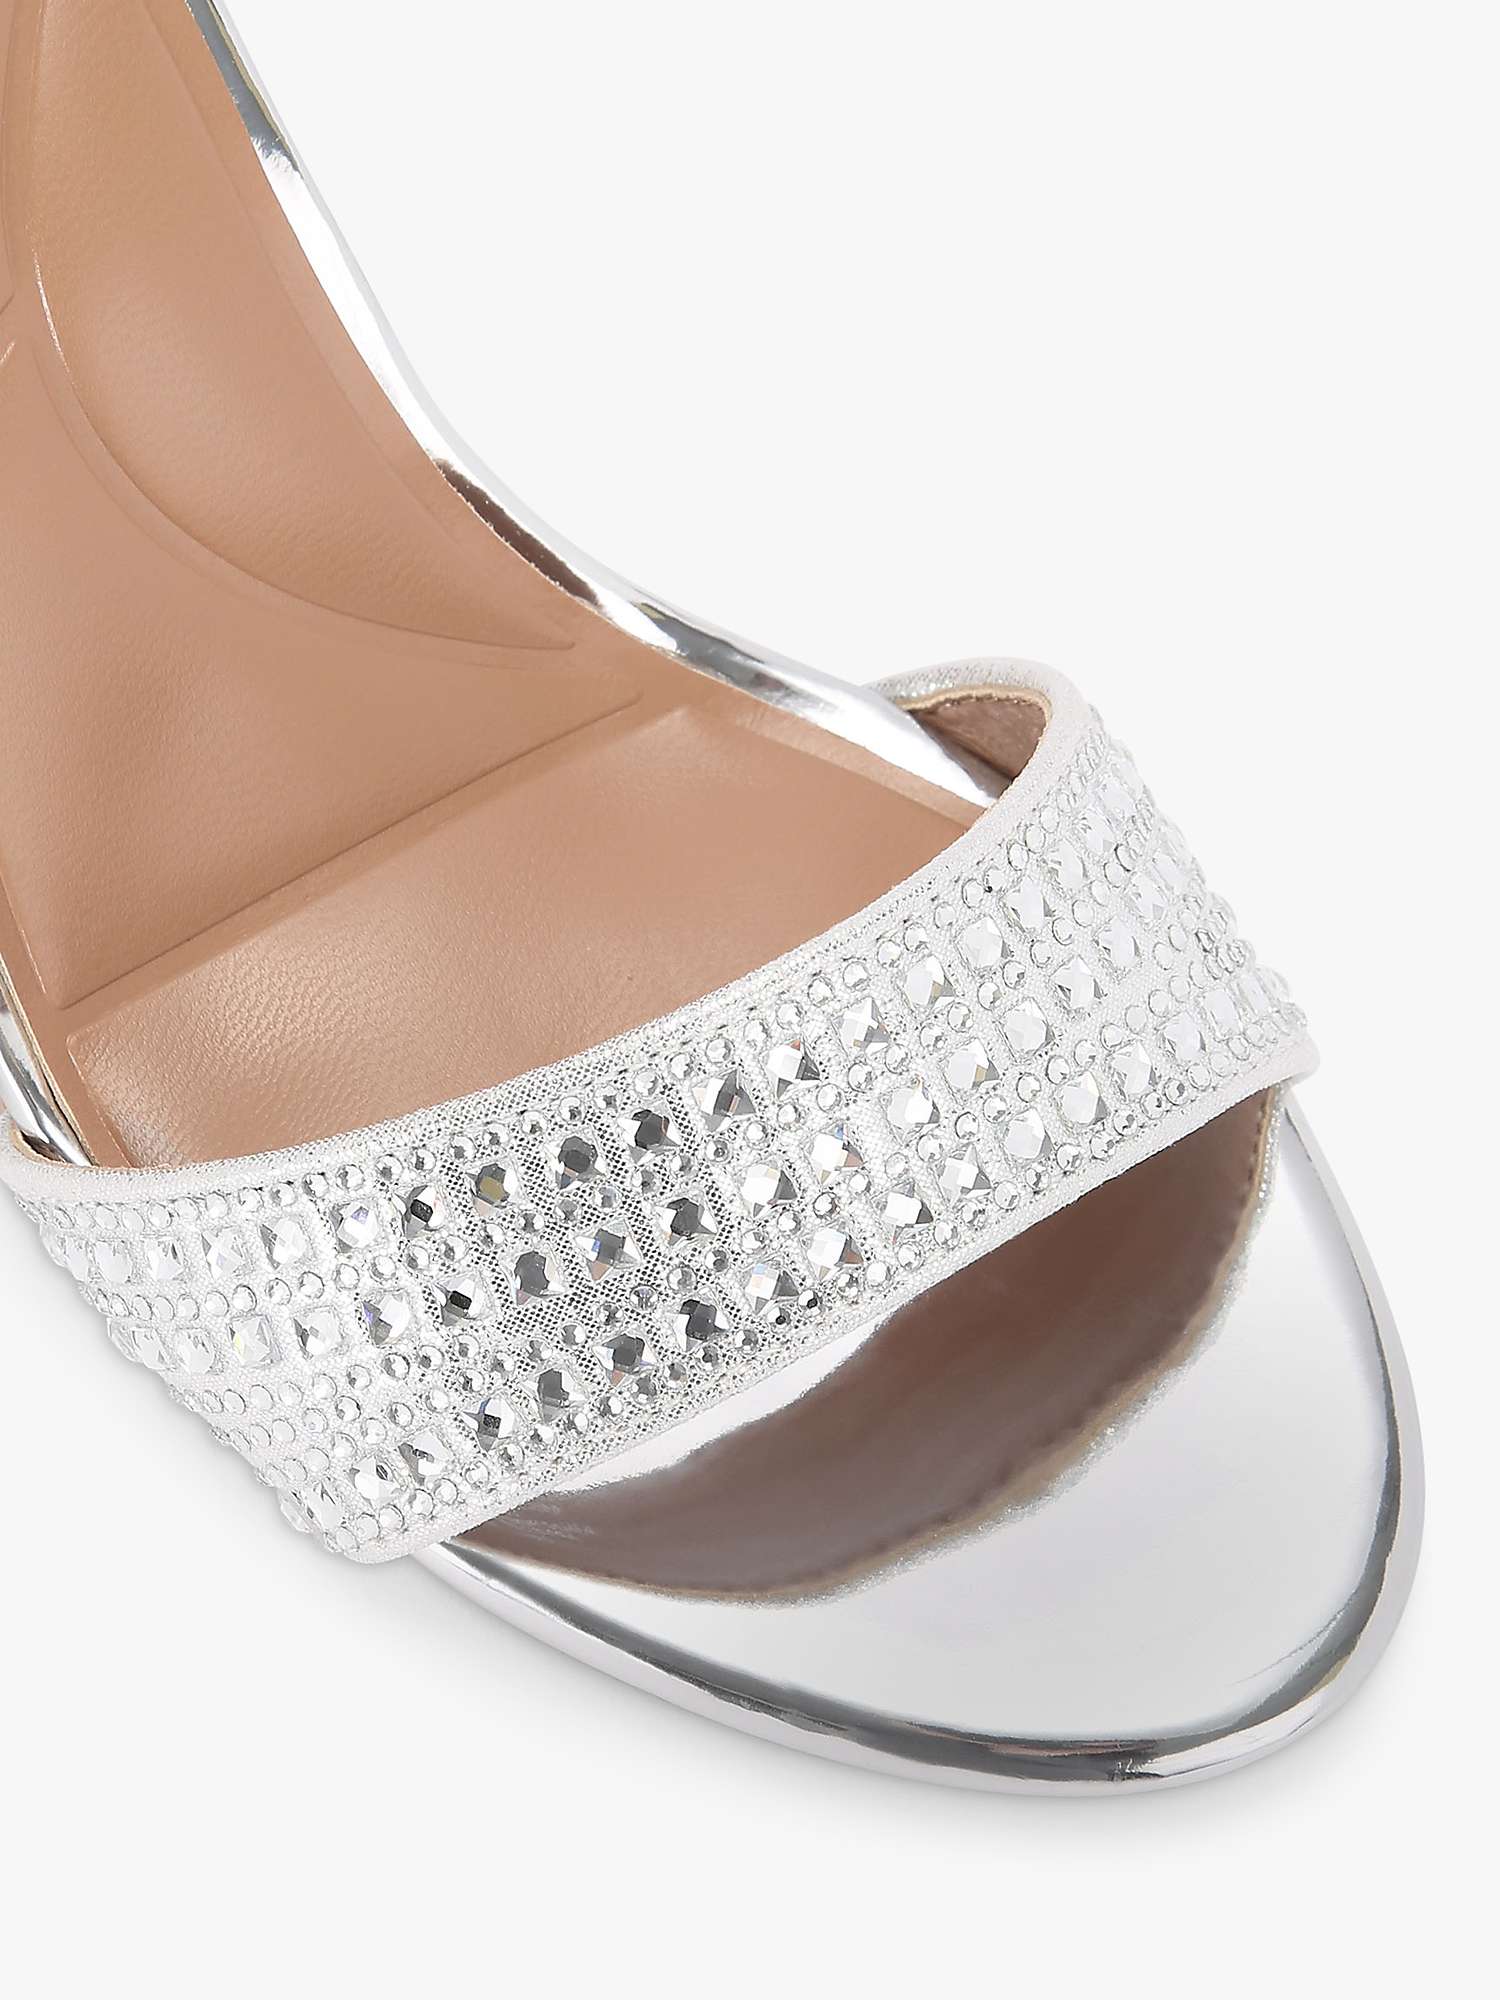 Buy Carvela Kianni Embellished Block Heel Sandals Online at johnlewis.com